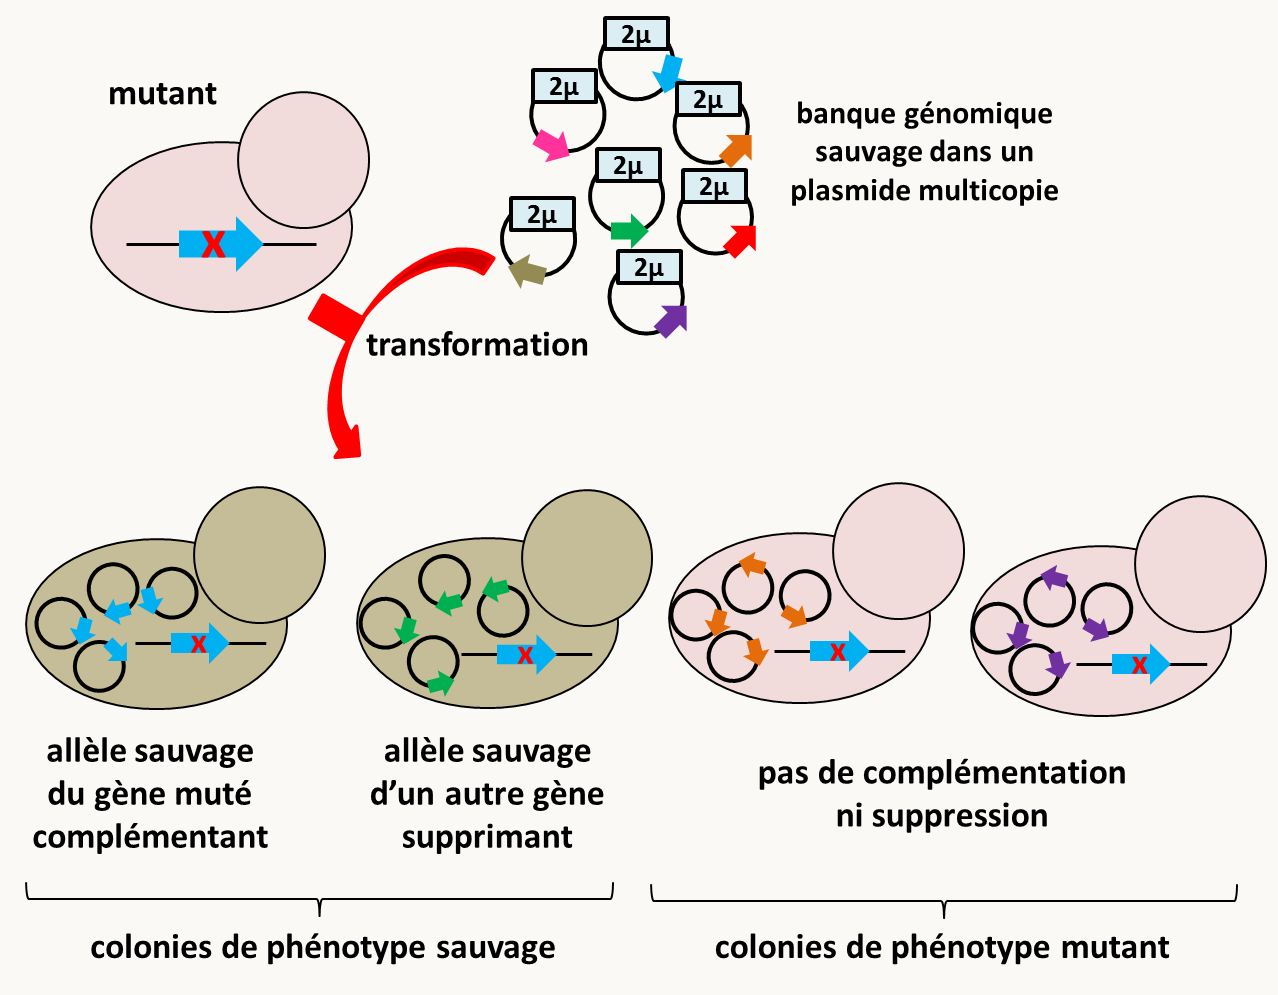 identification de suppresseurs multicopies chez Saccharomyces cerevisiae. Notez que l'allèle sauvage en multicopie peut en lui-même conférer un phénotype différent du phénotype sauvage, éventuellement opposé à celui de la mutation initiale.